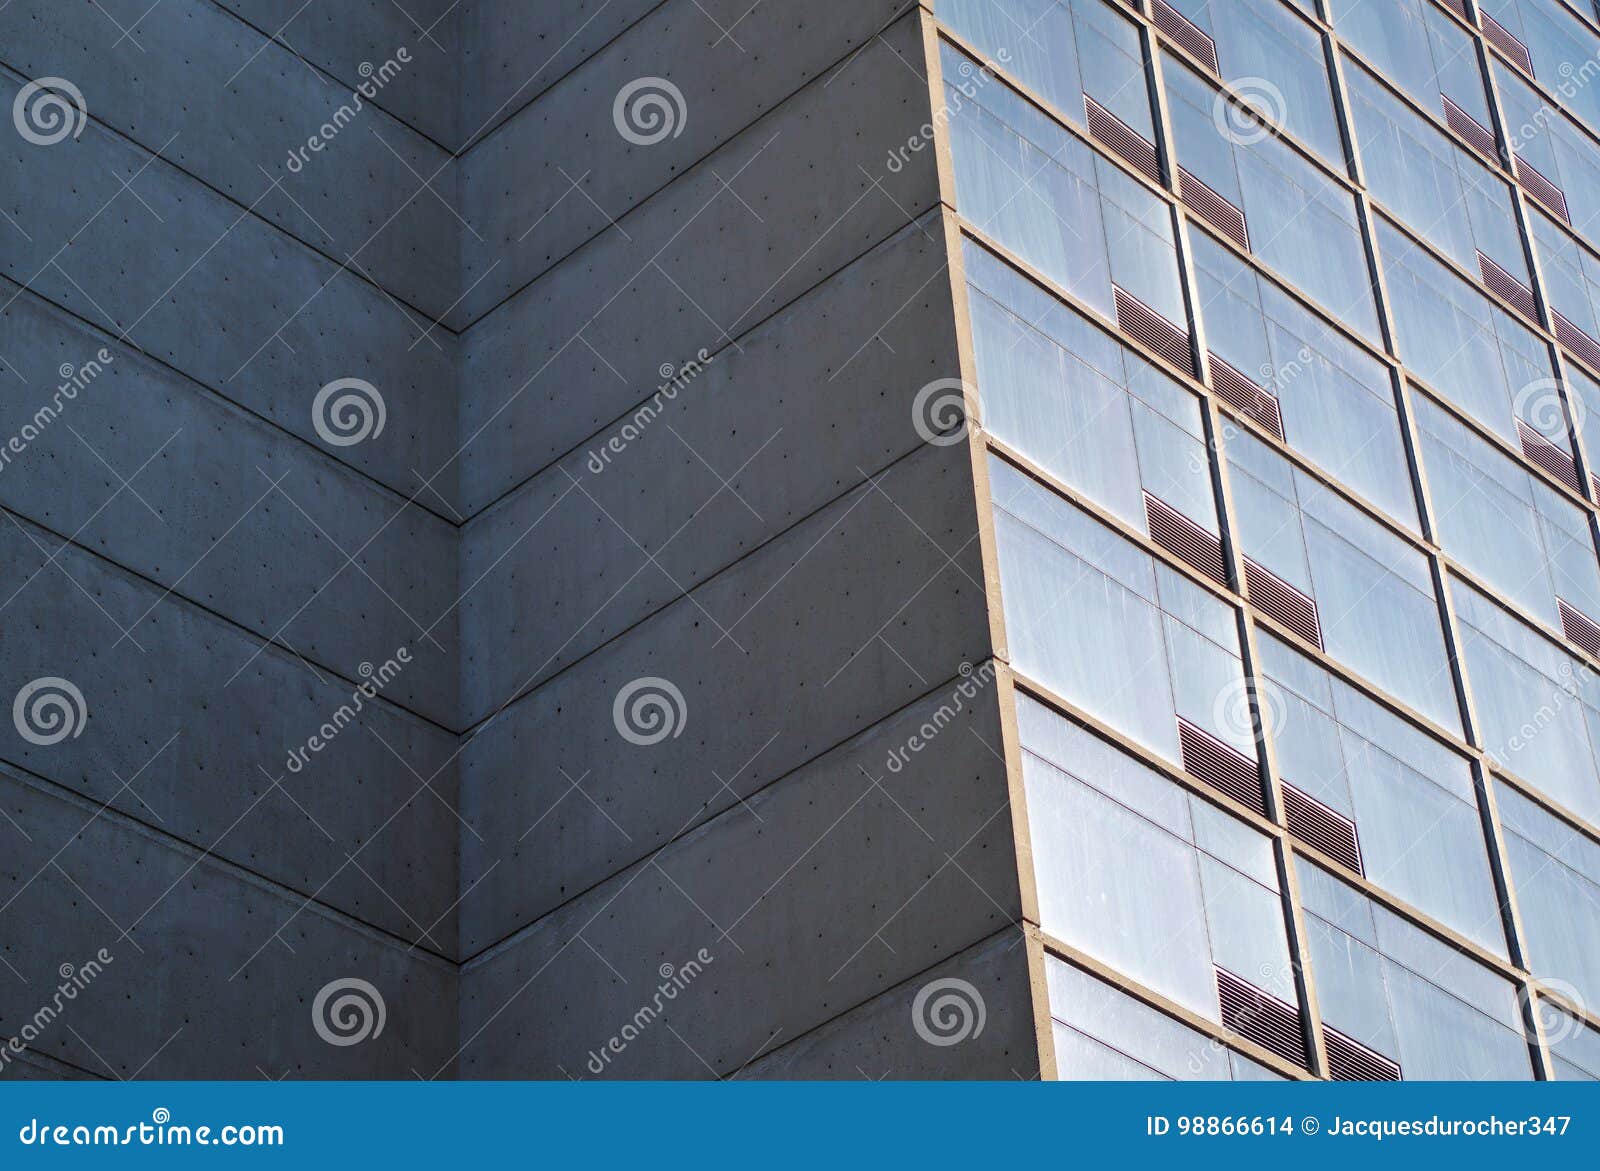 Building Corner Concrete Glass Windows Modern Architecture Skyscraper ...